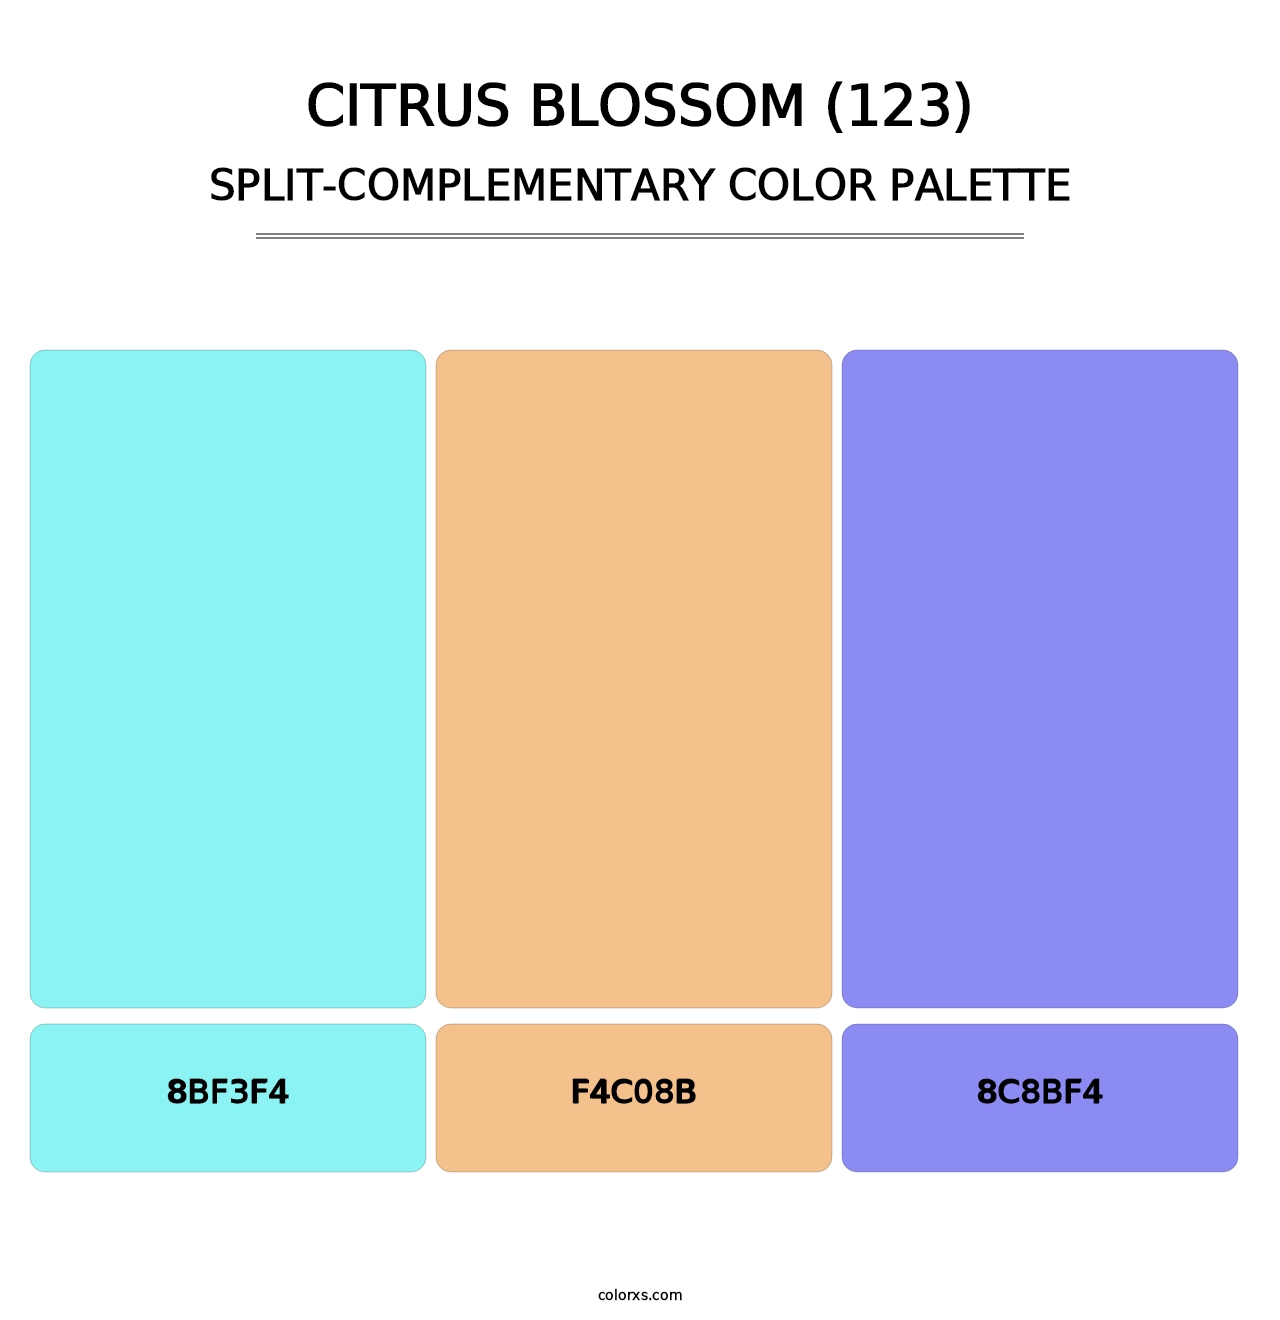 Citrus Blossom (123) - Split-Complementary Color Palette